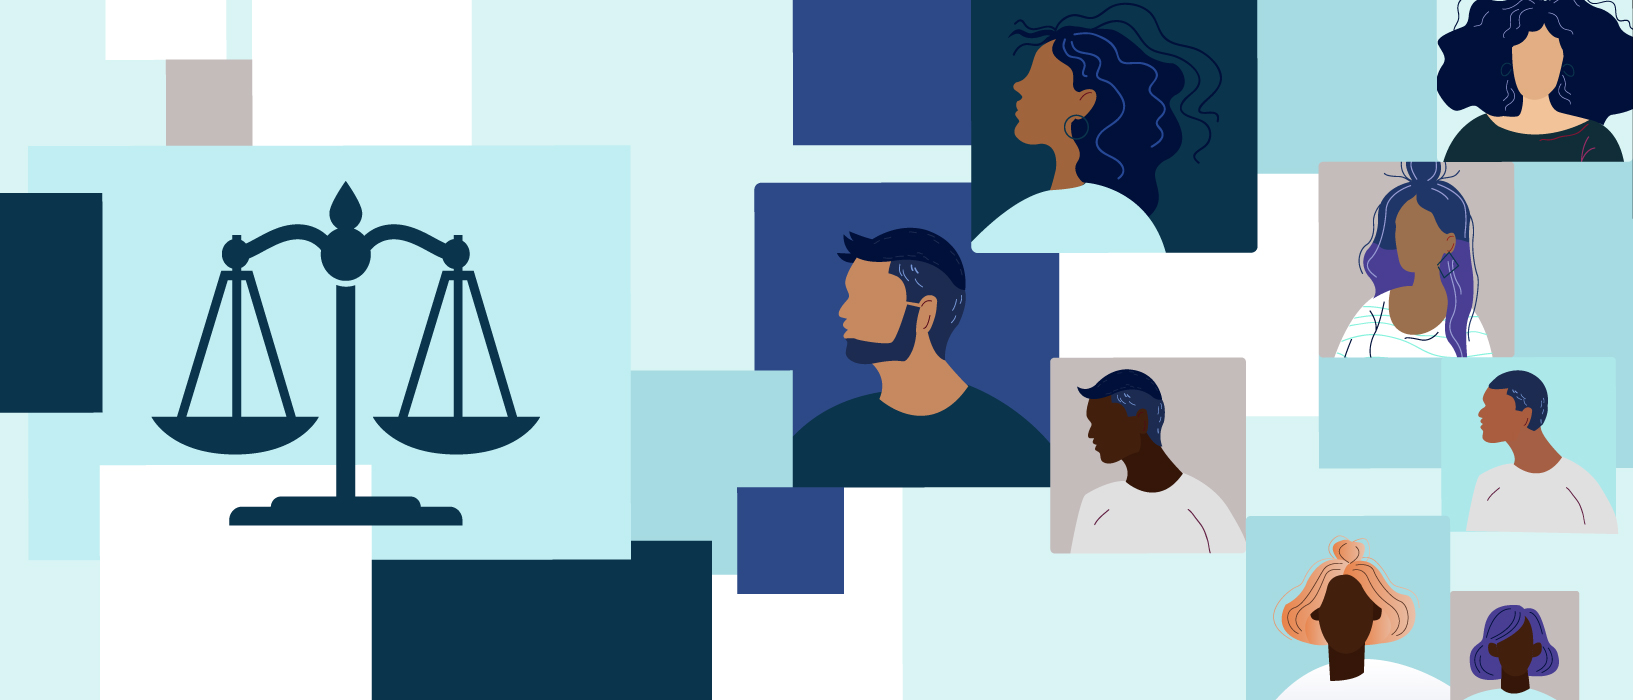 Criminal Justice Litigation, Equality, and Discrimination